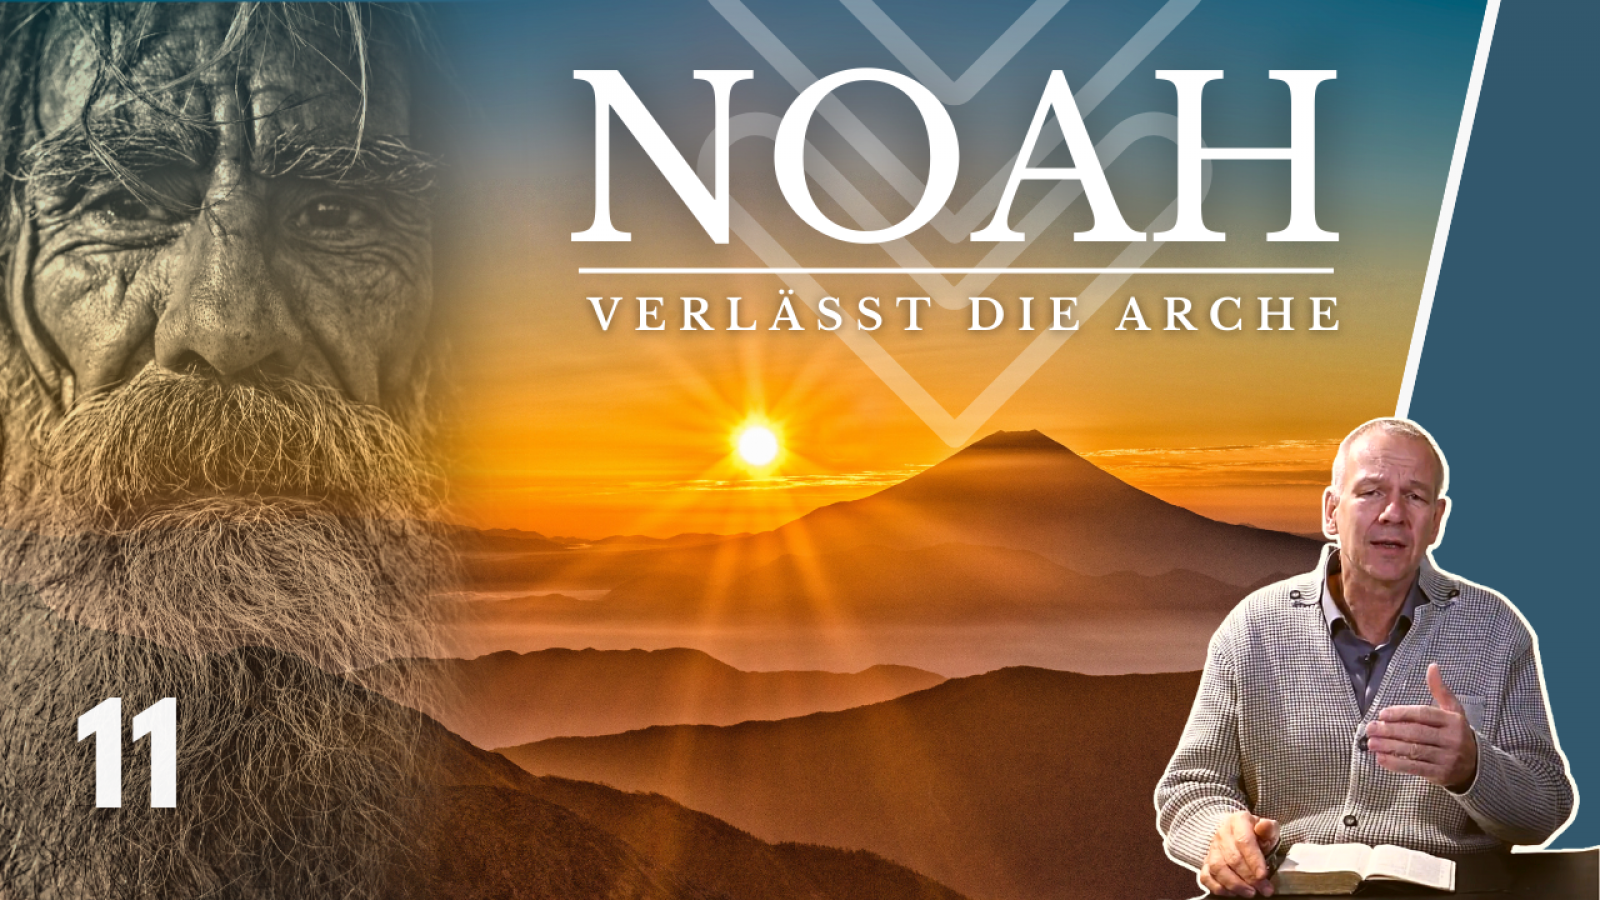 Noah verlässt die Arche